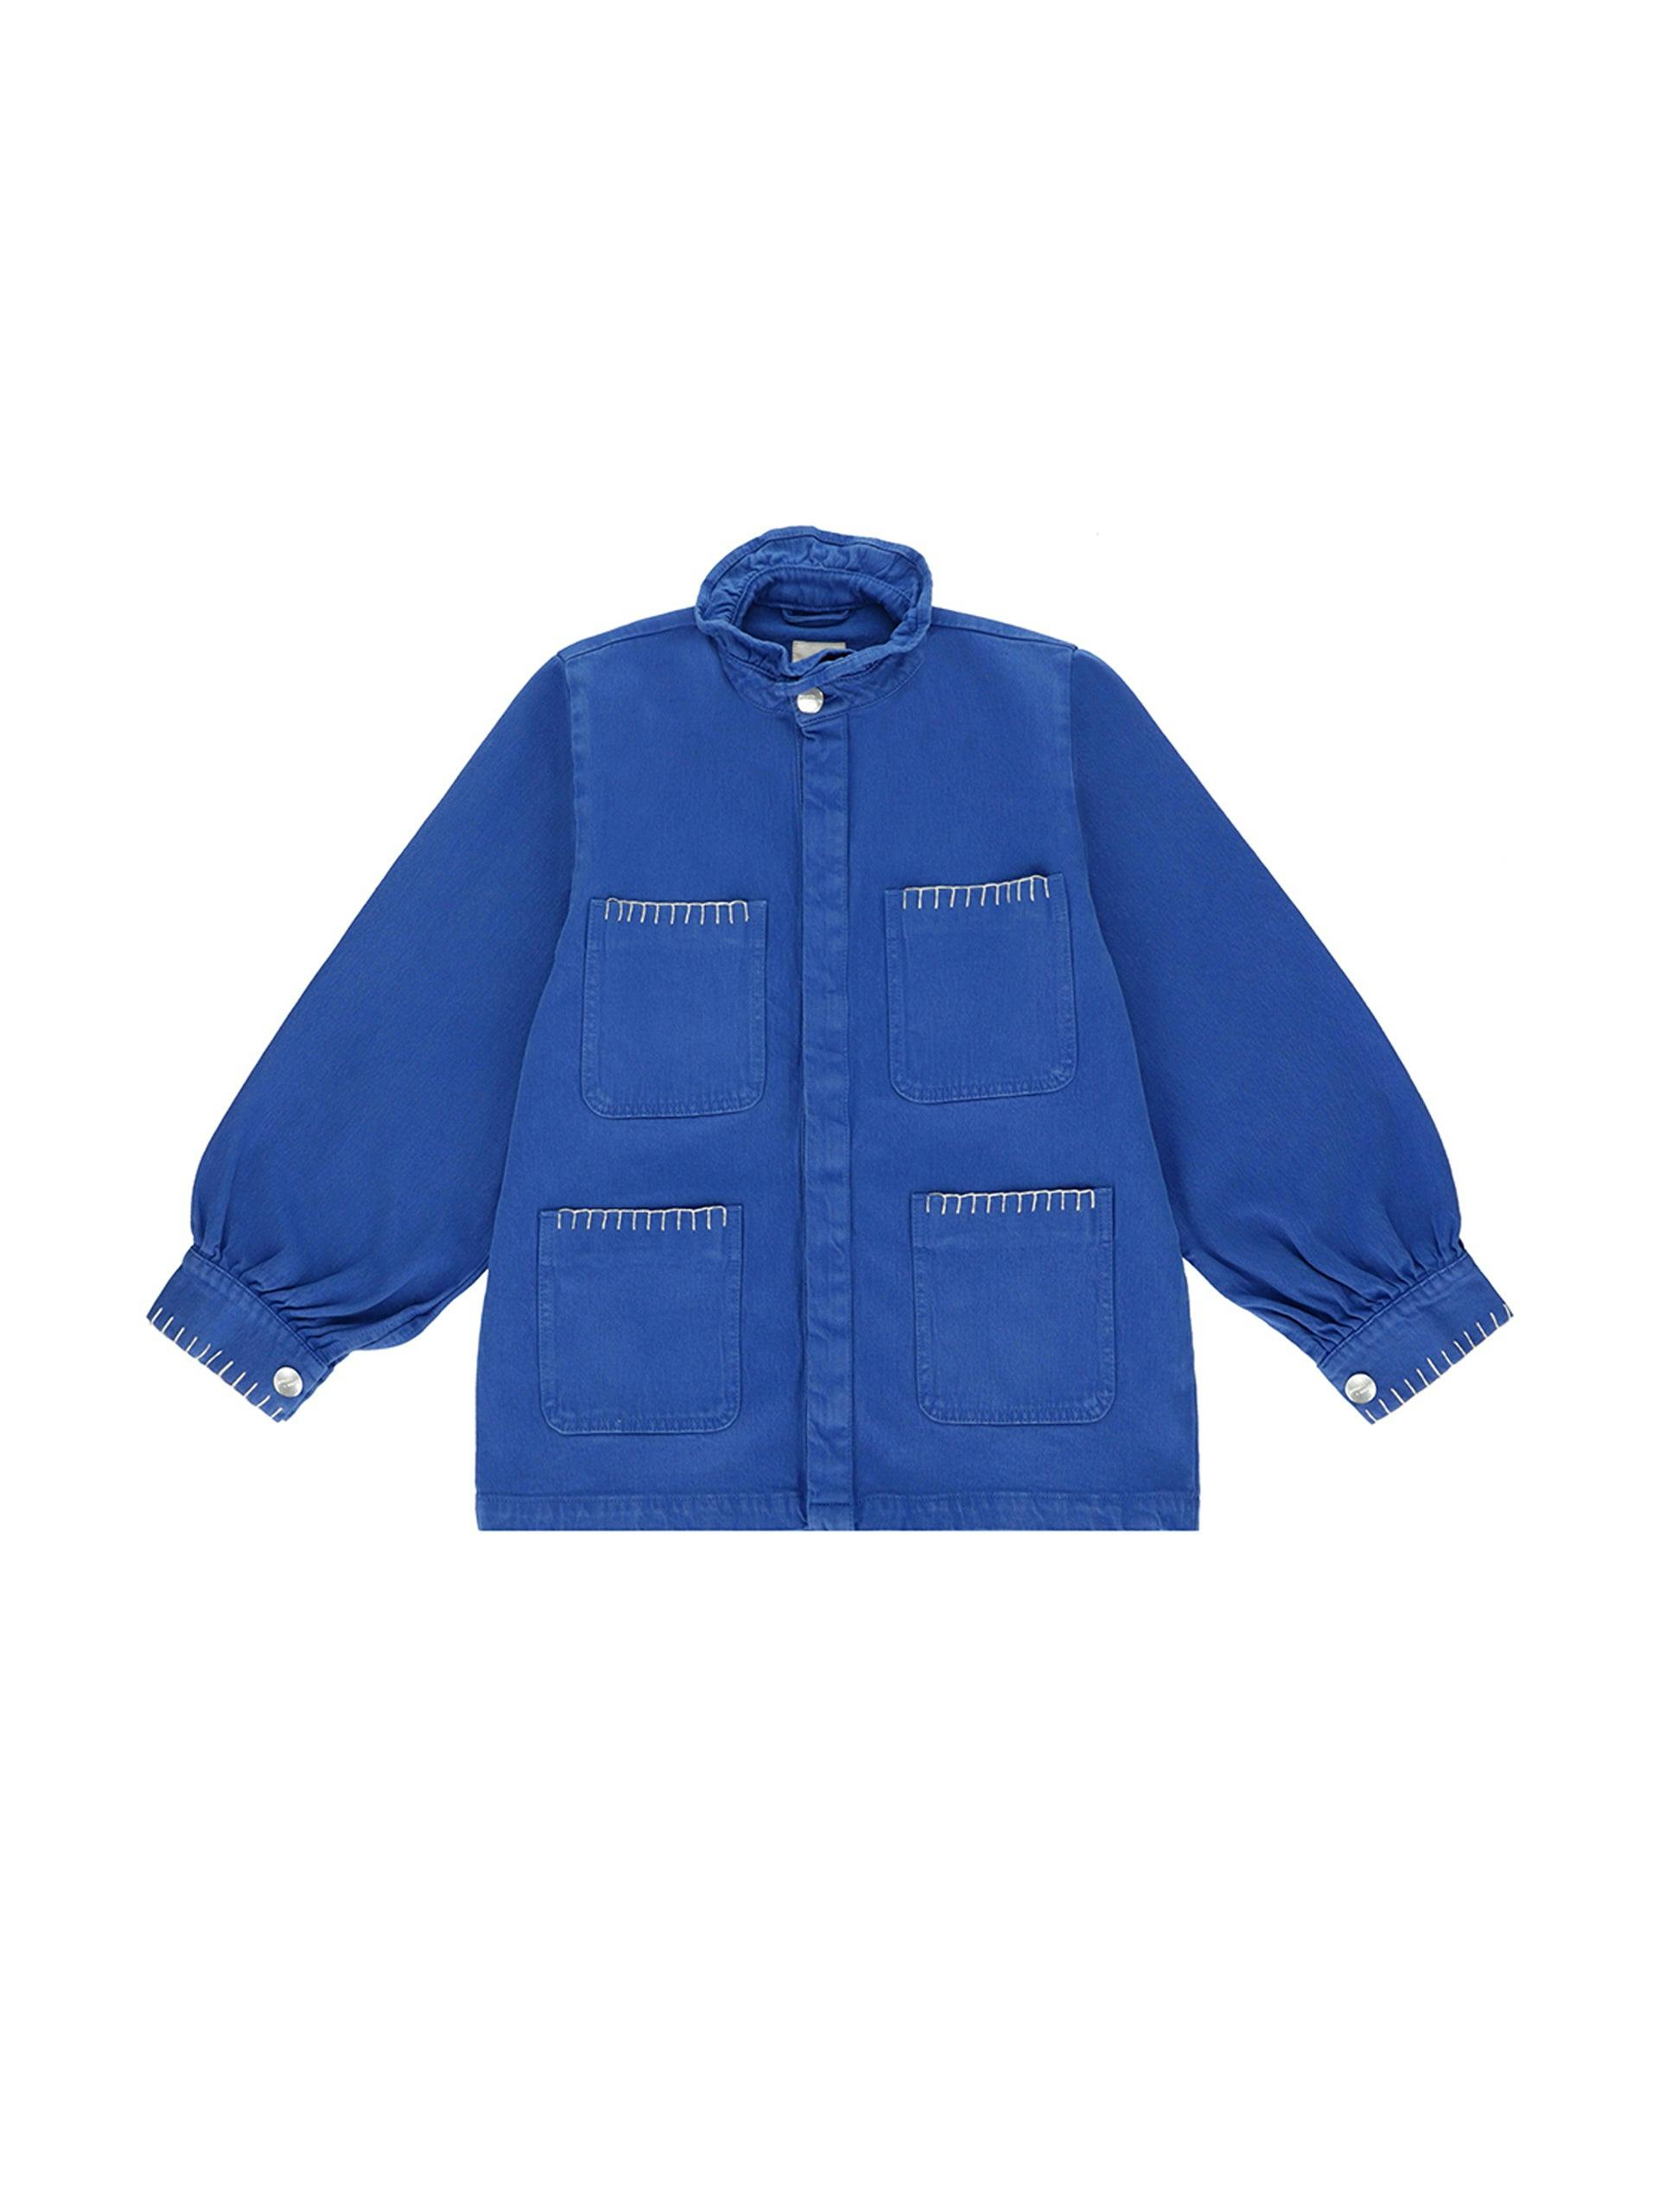 Olympia blue Pablo jacket